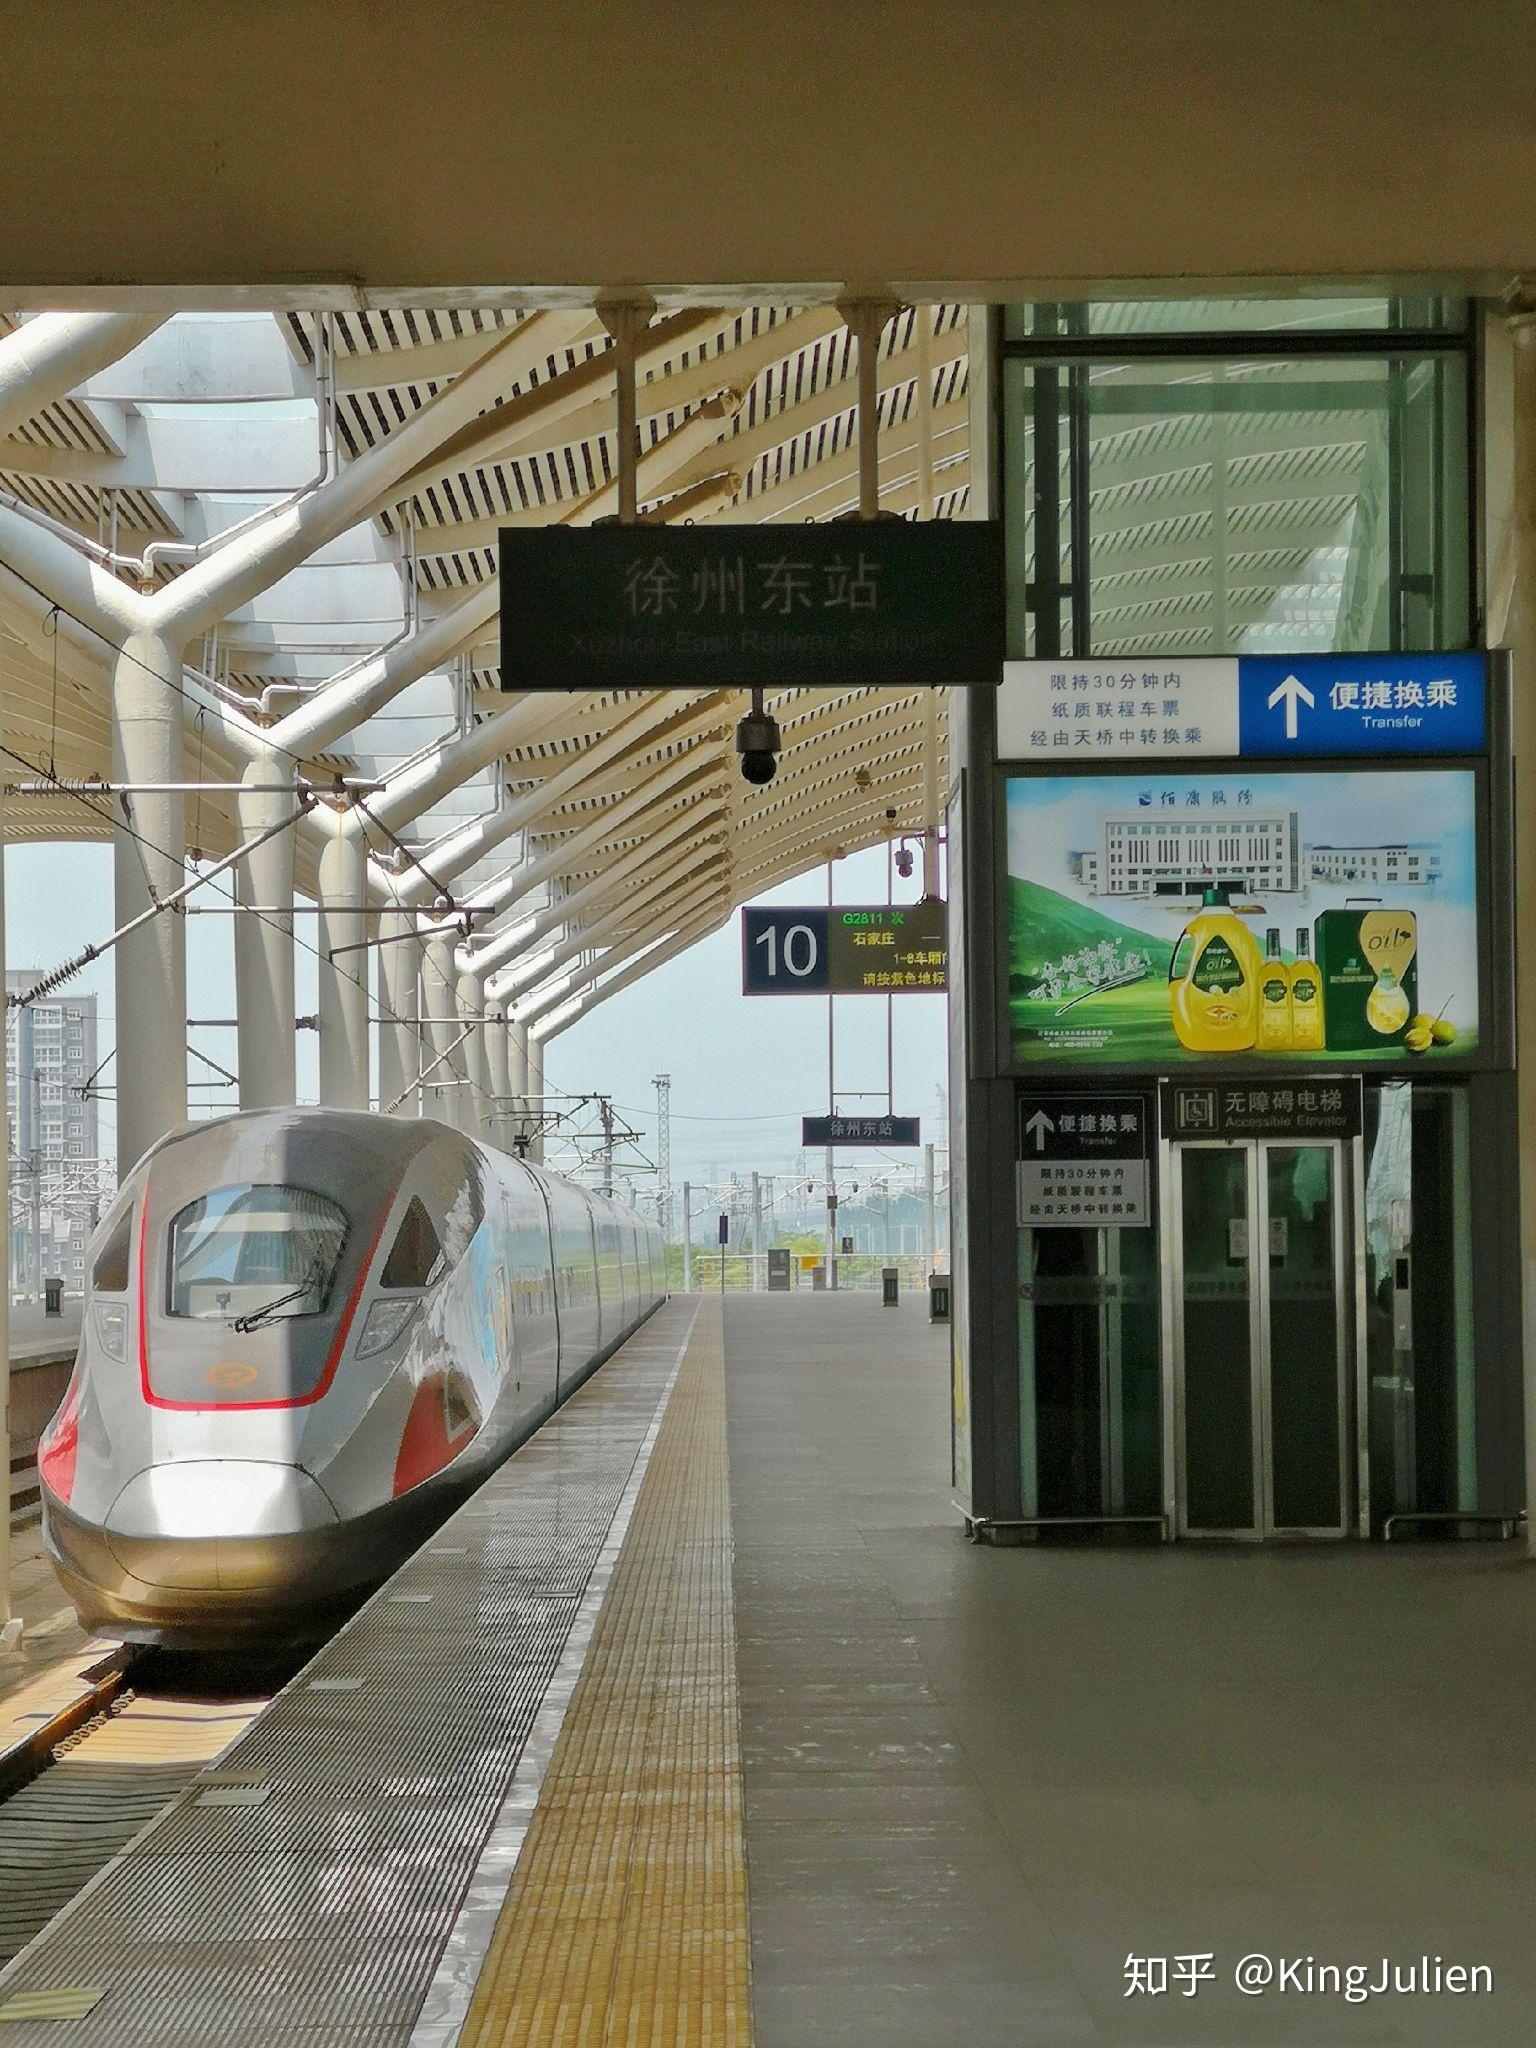 在站台上稍等片刻后,g2811驶入徐州东站,车头接近后一看车号,的确为cr